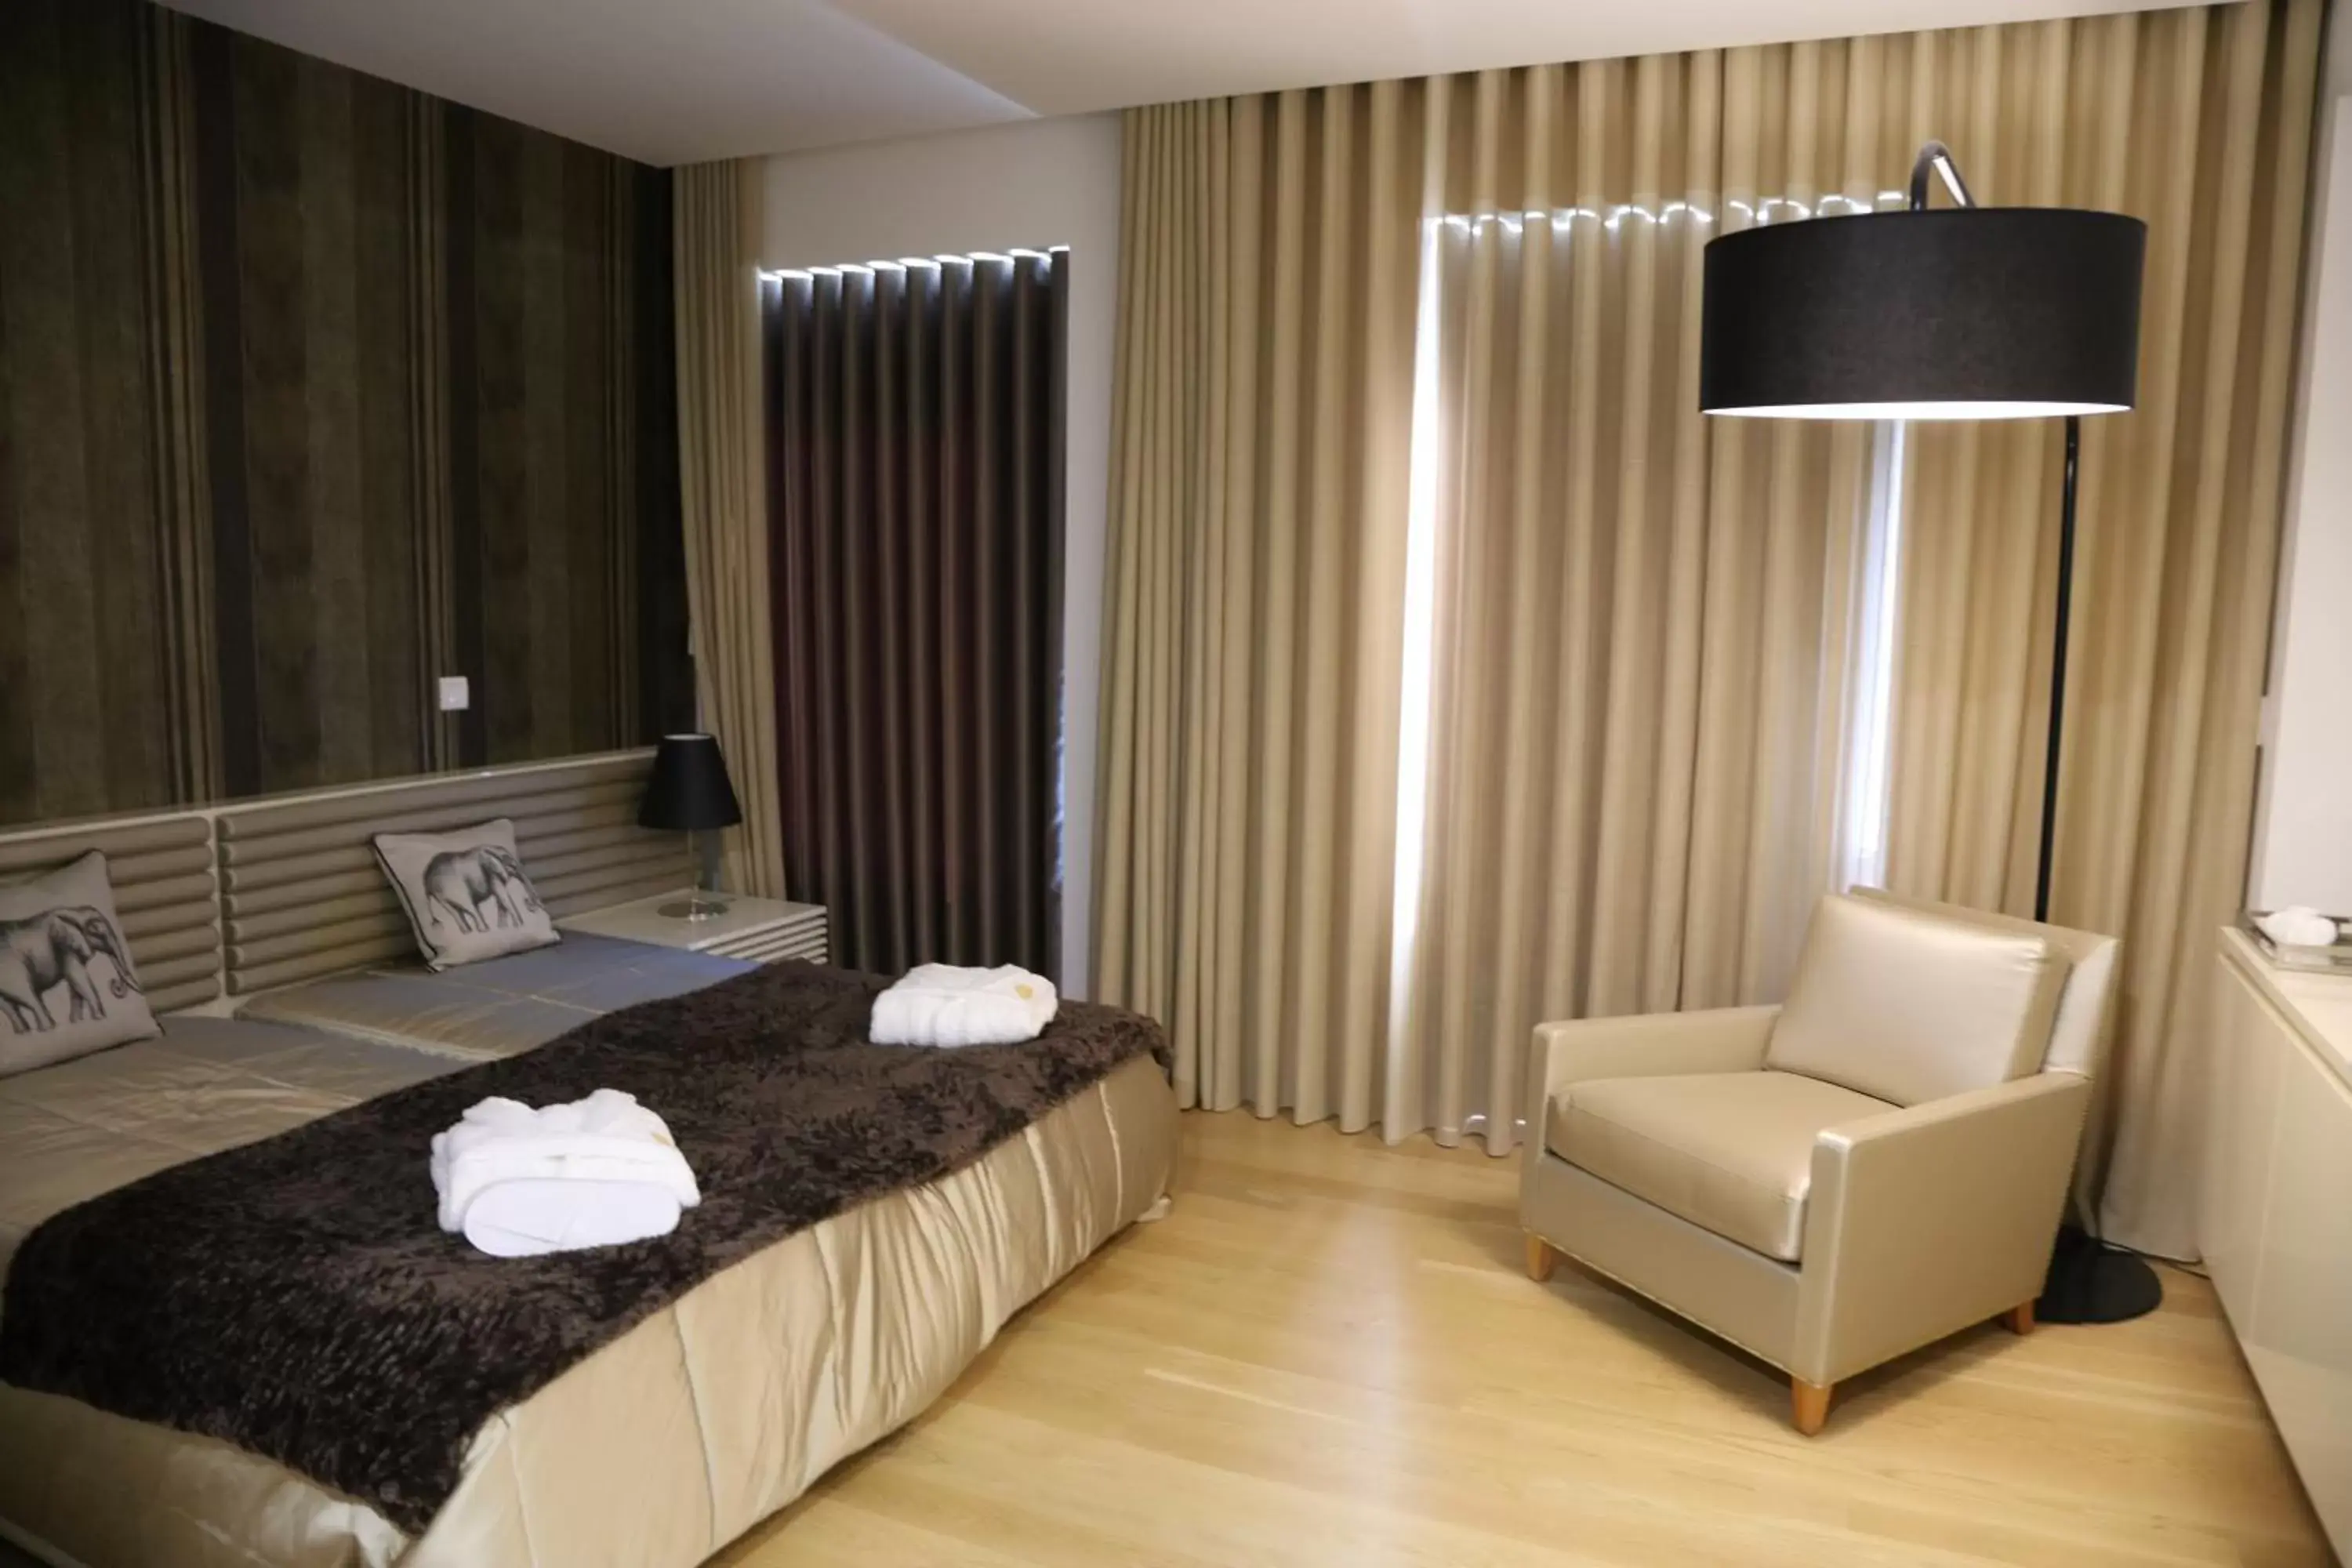 Bedroom, Room Photo in Hotel Rural Quinta das Quintães